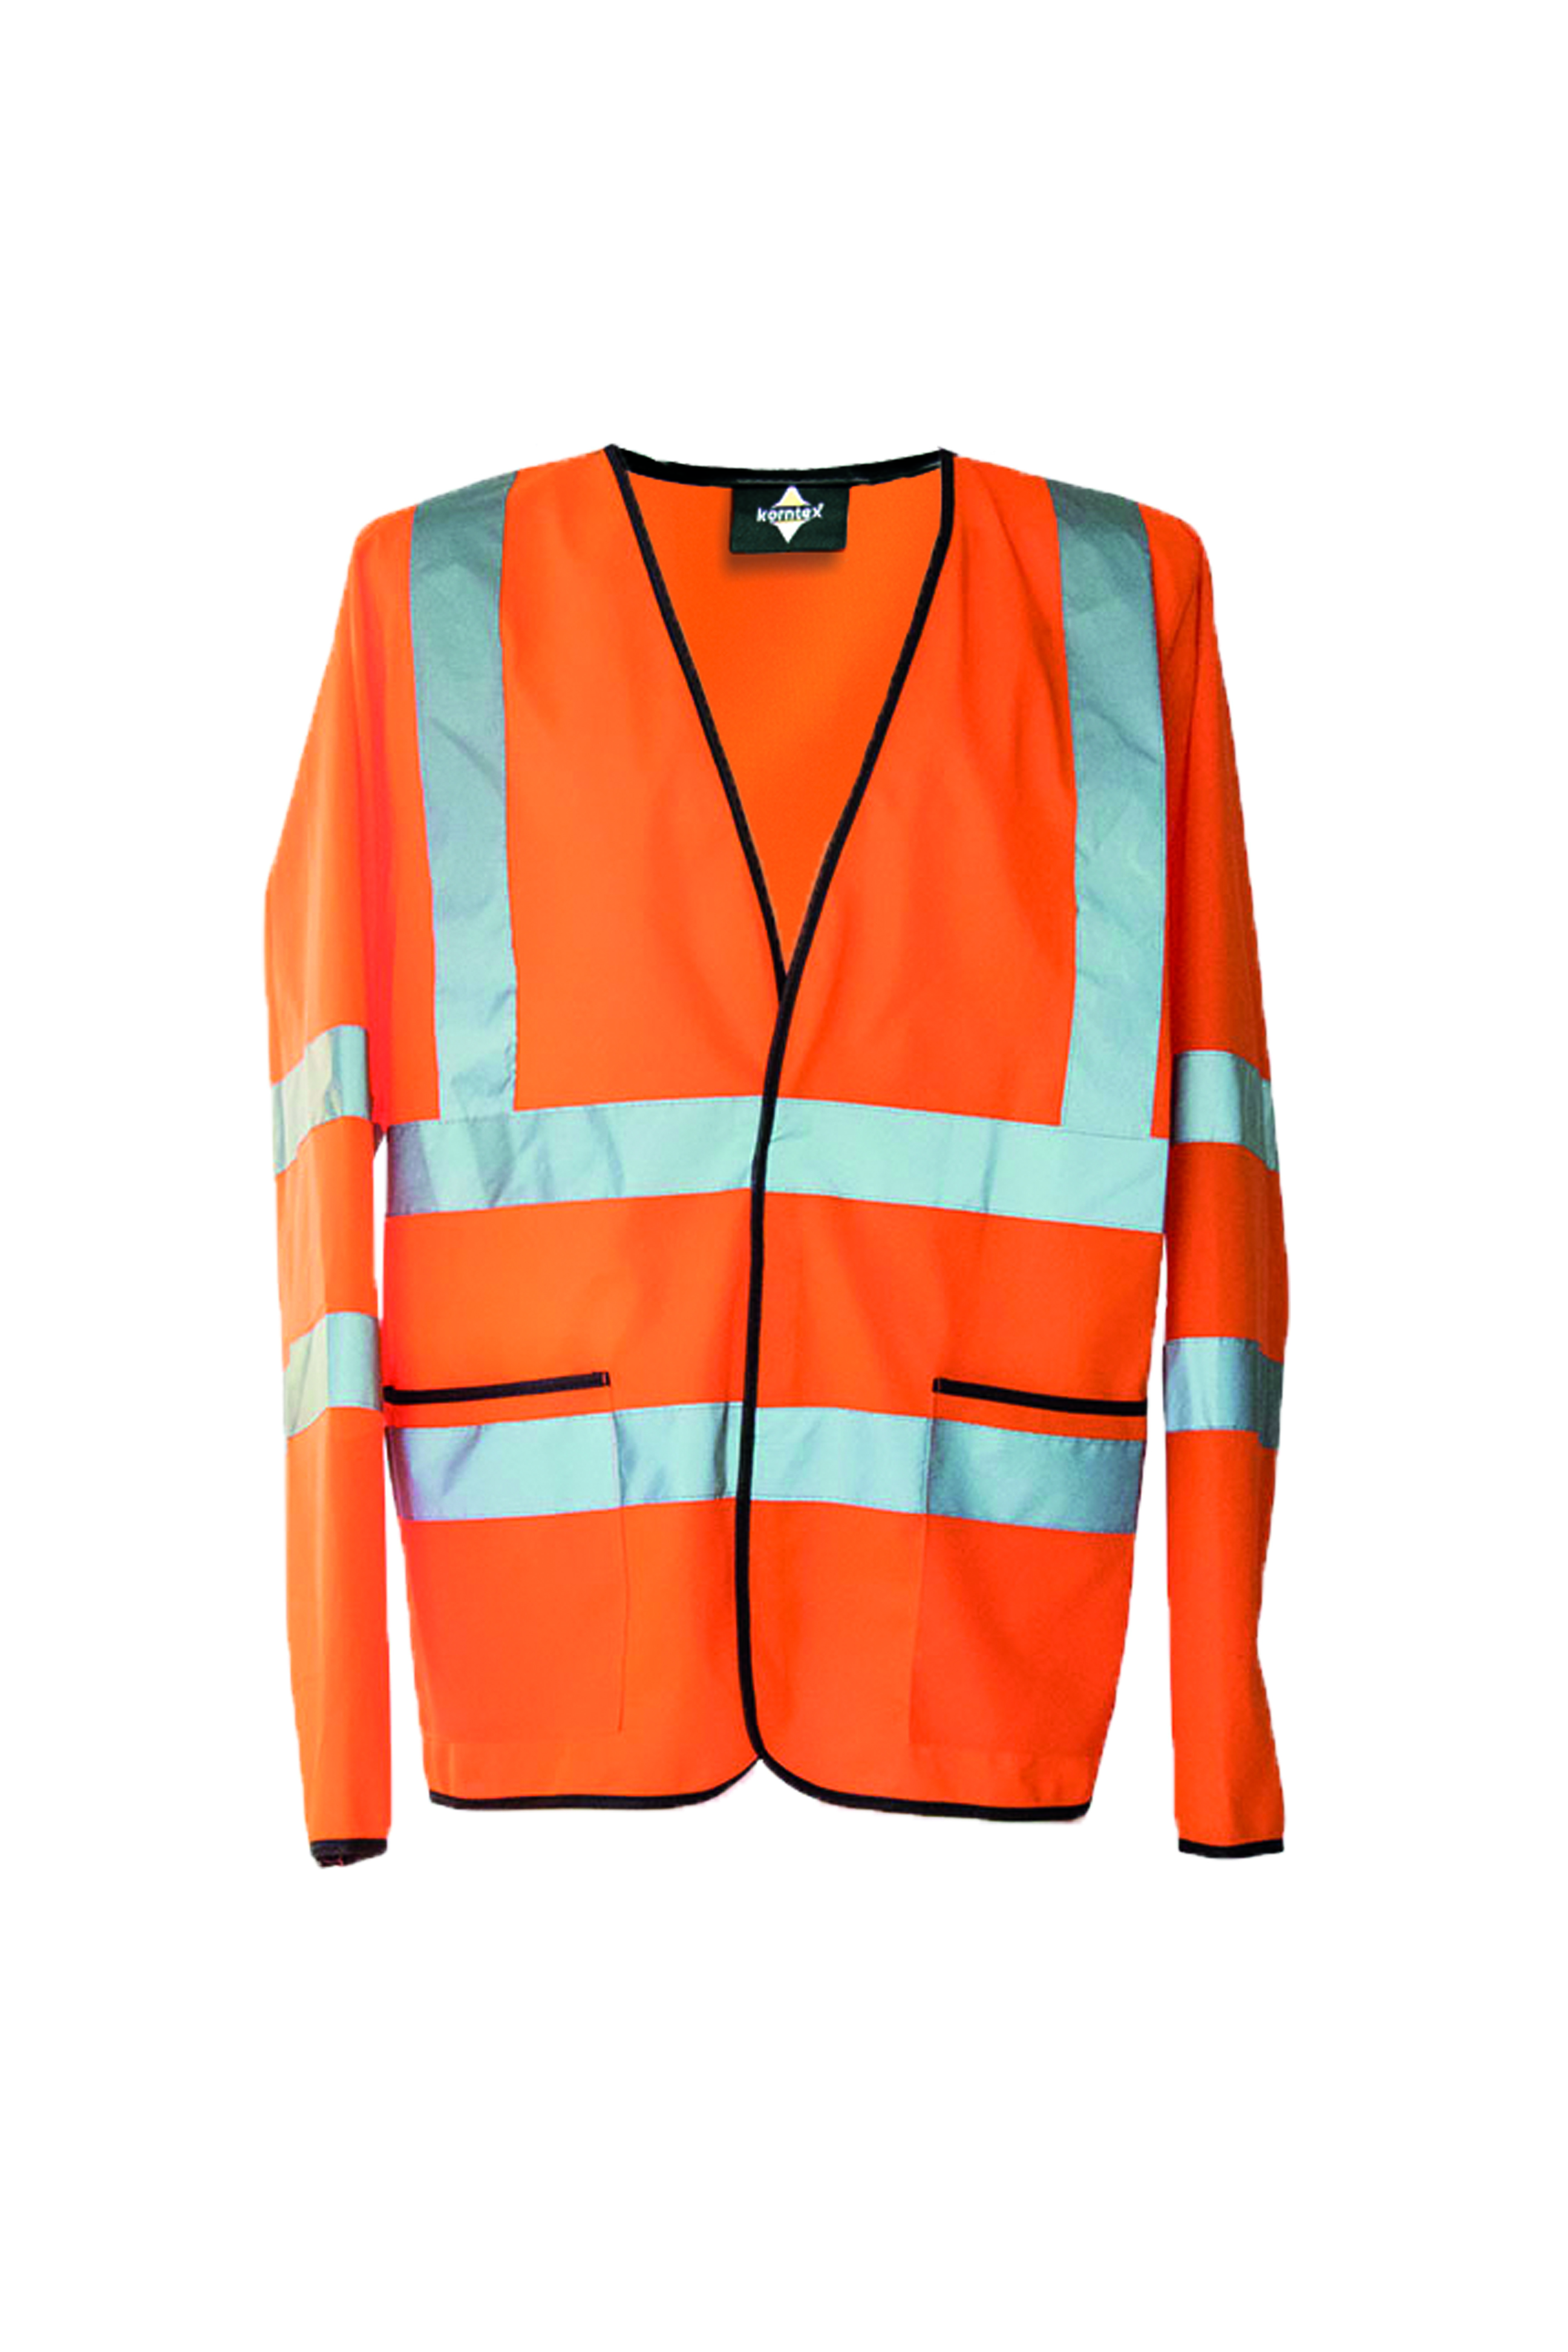 Bunda Korntex Hi-Vis Lightweight Safety Jacket Andorra